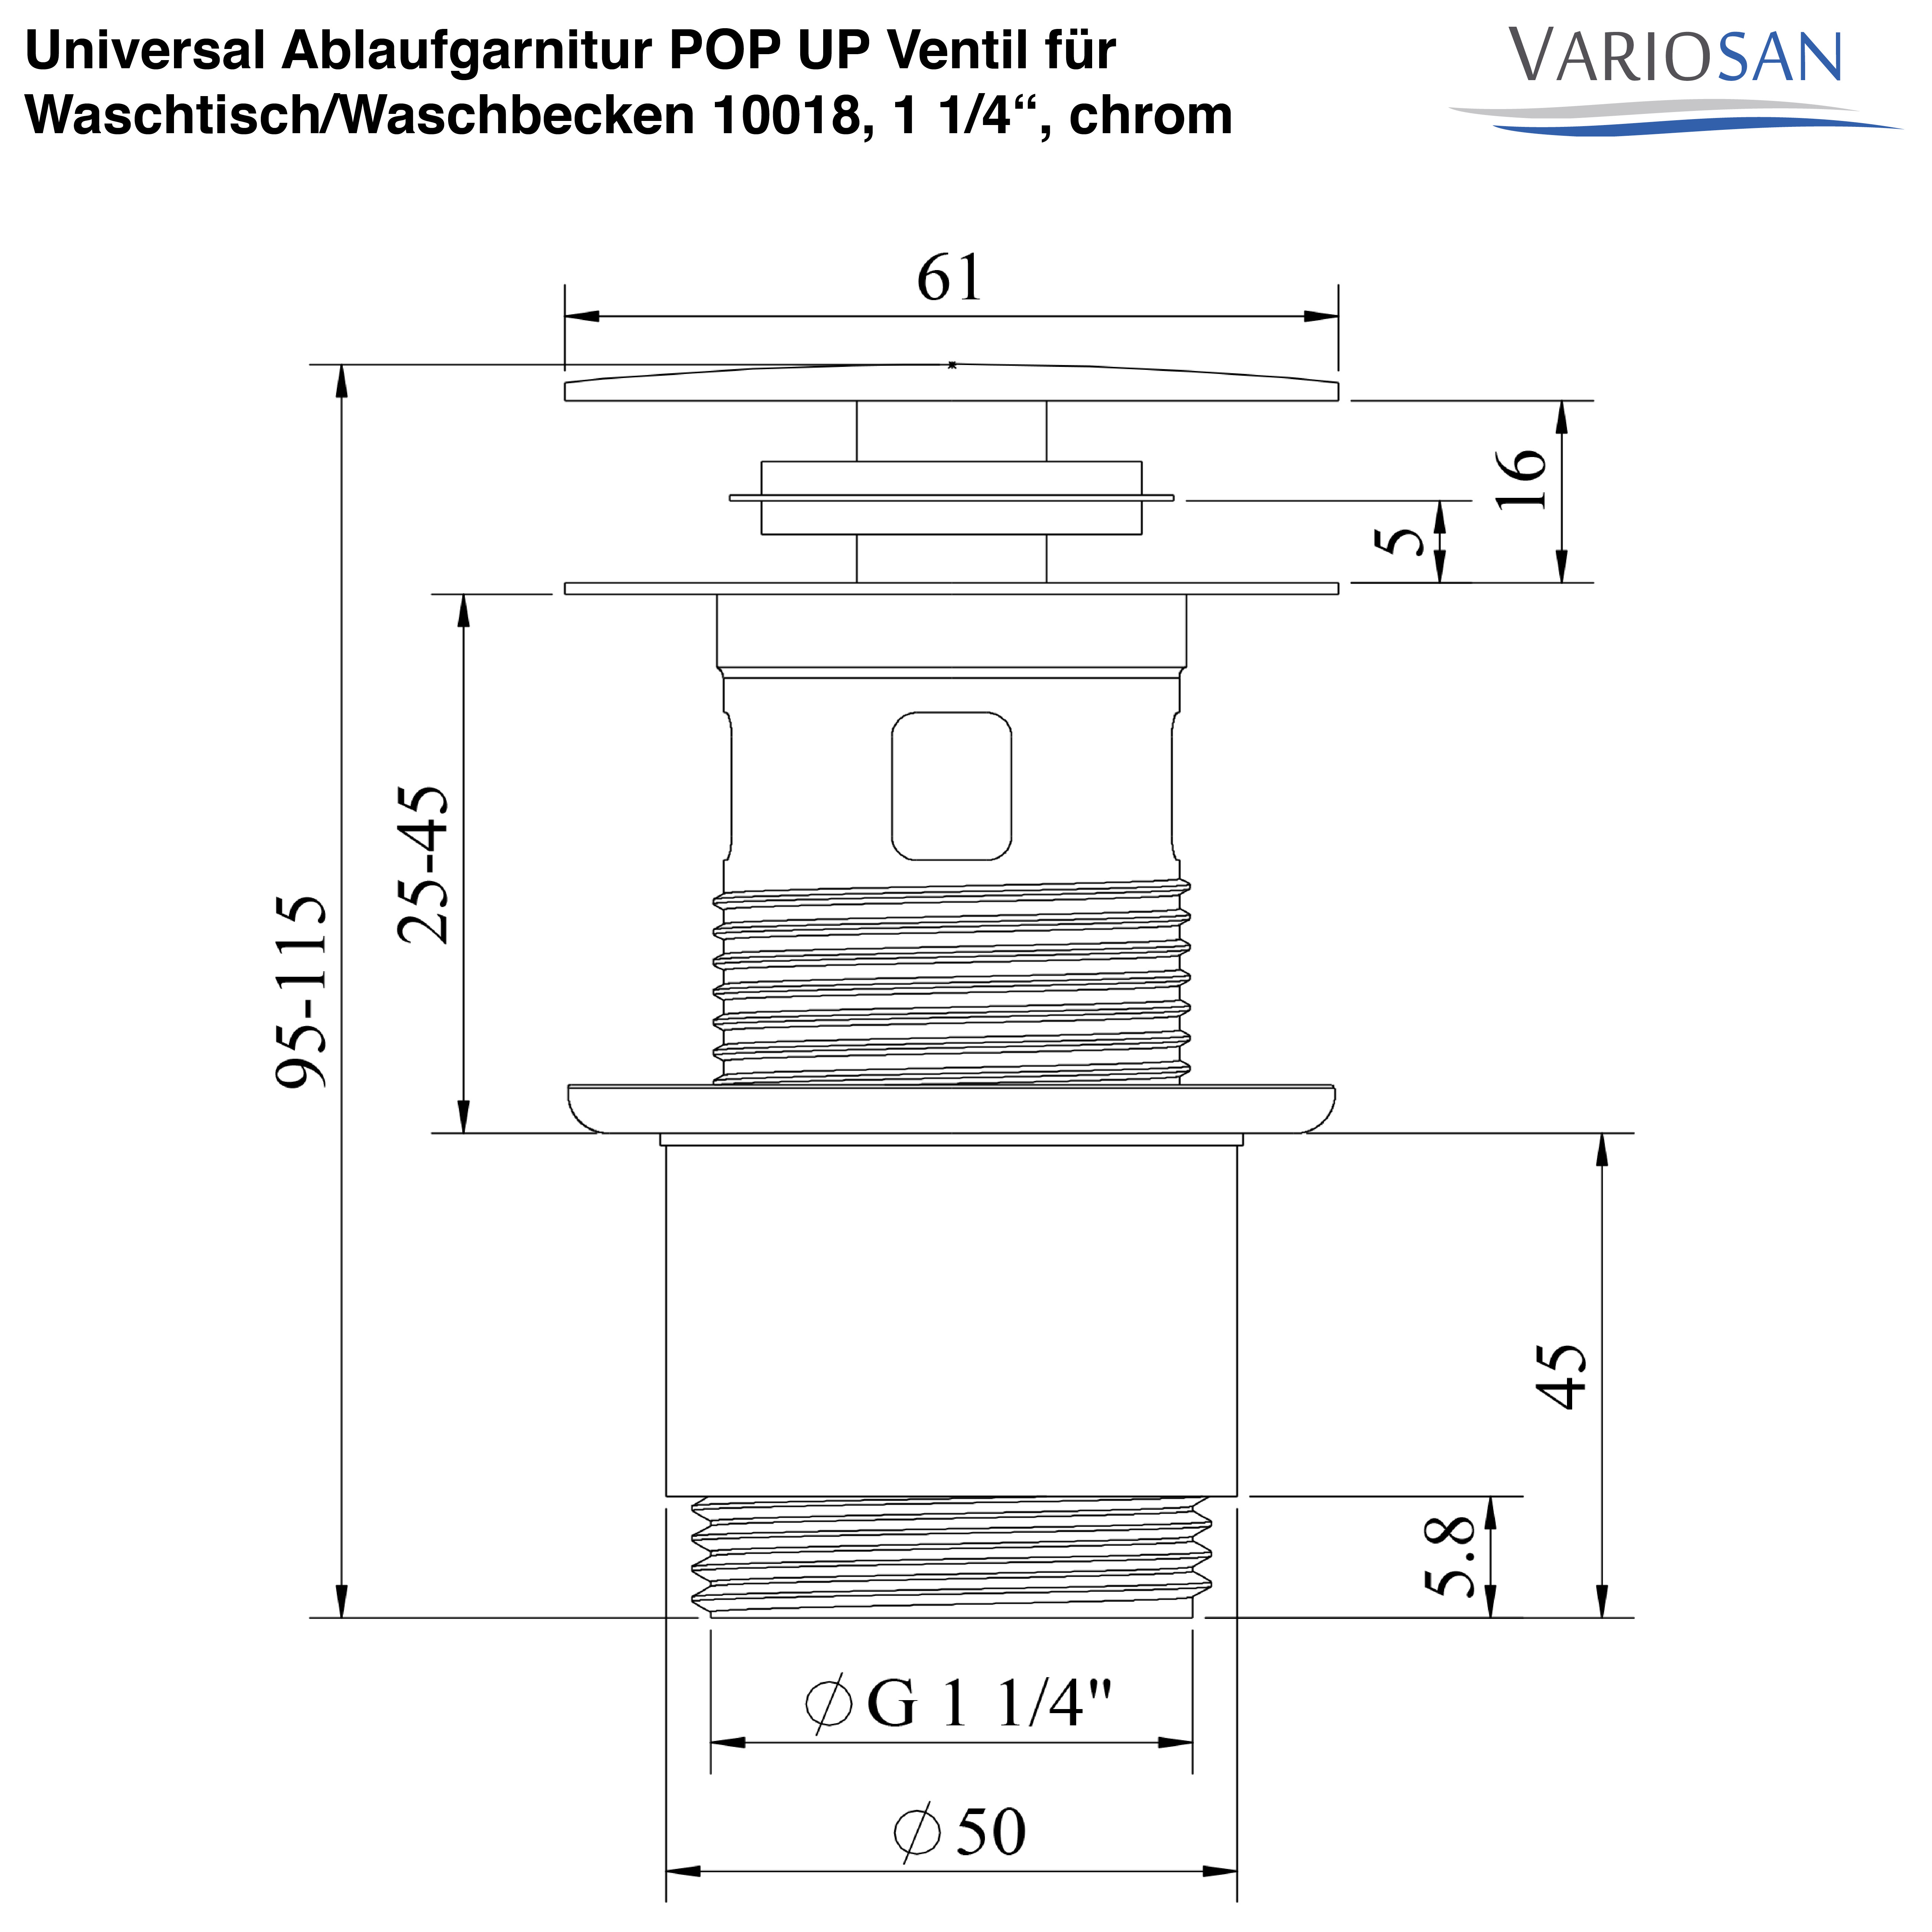 VARIOSAN Universal Ablaufgarnitur POP UP Ventil für Waschtisch / Waschbecken